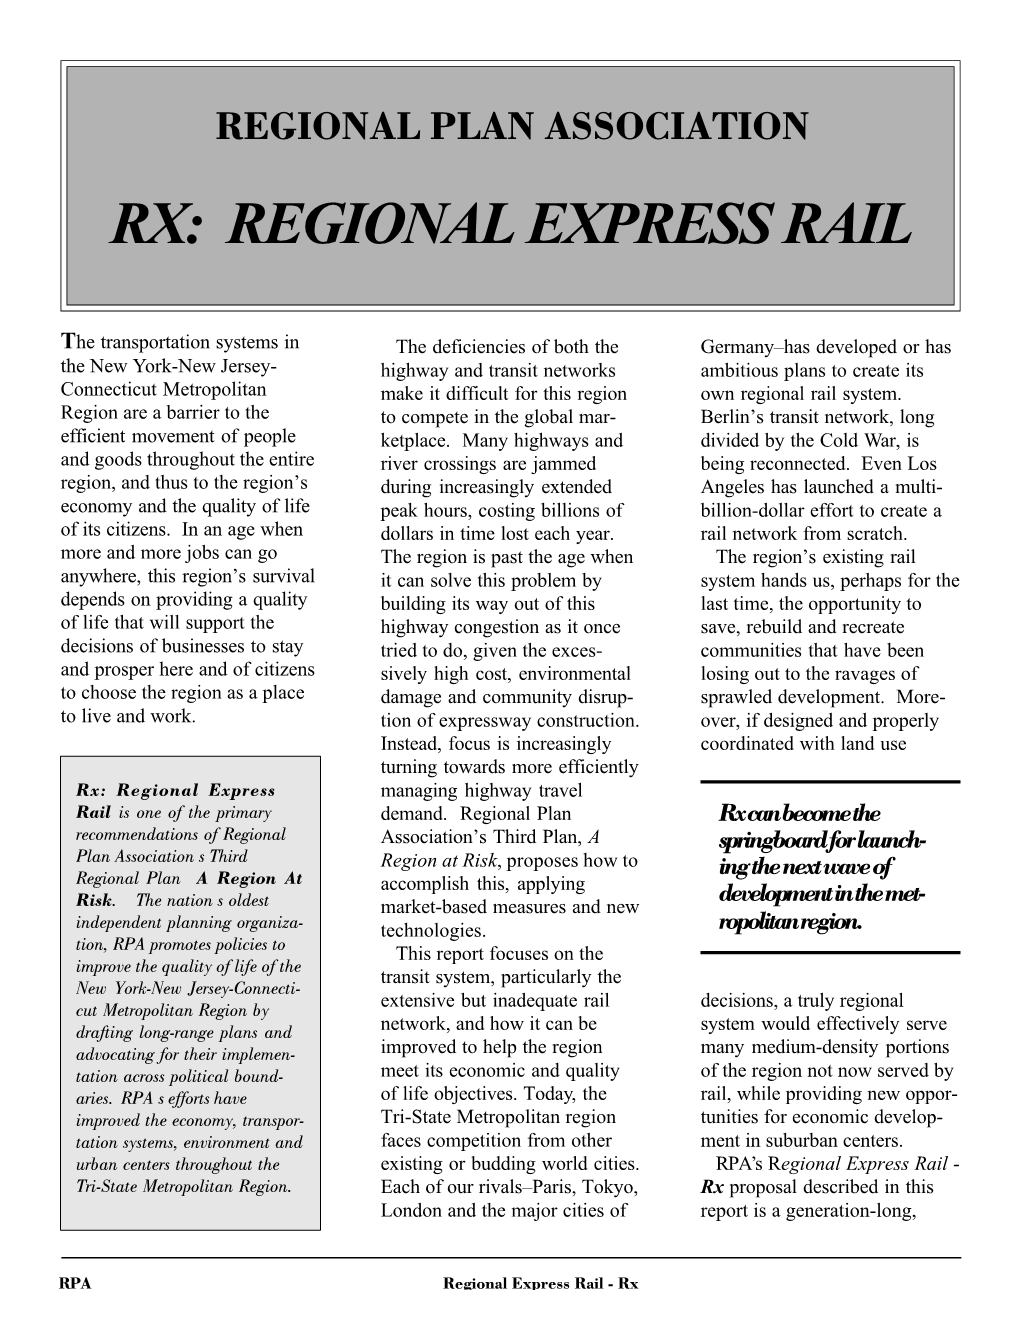 Regional Express Rail